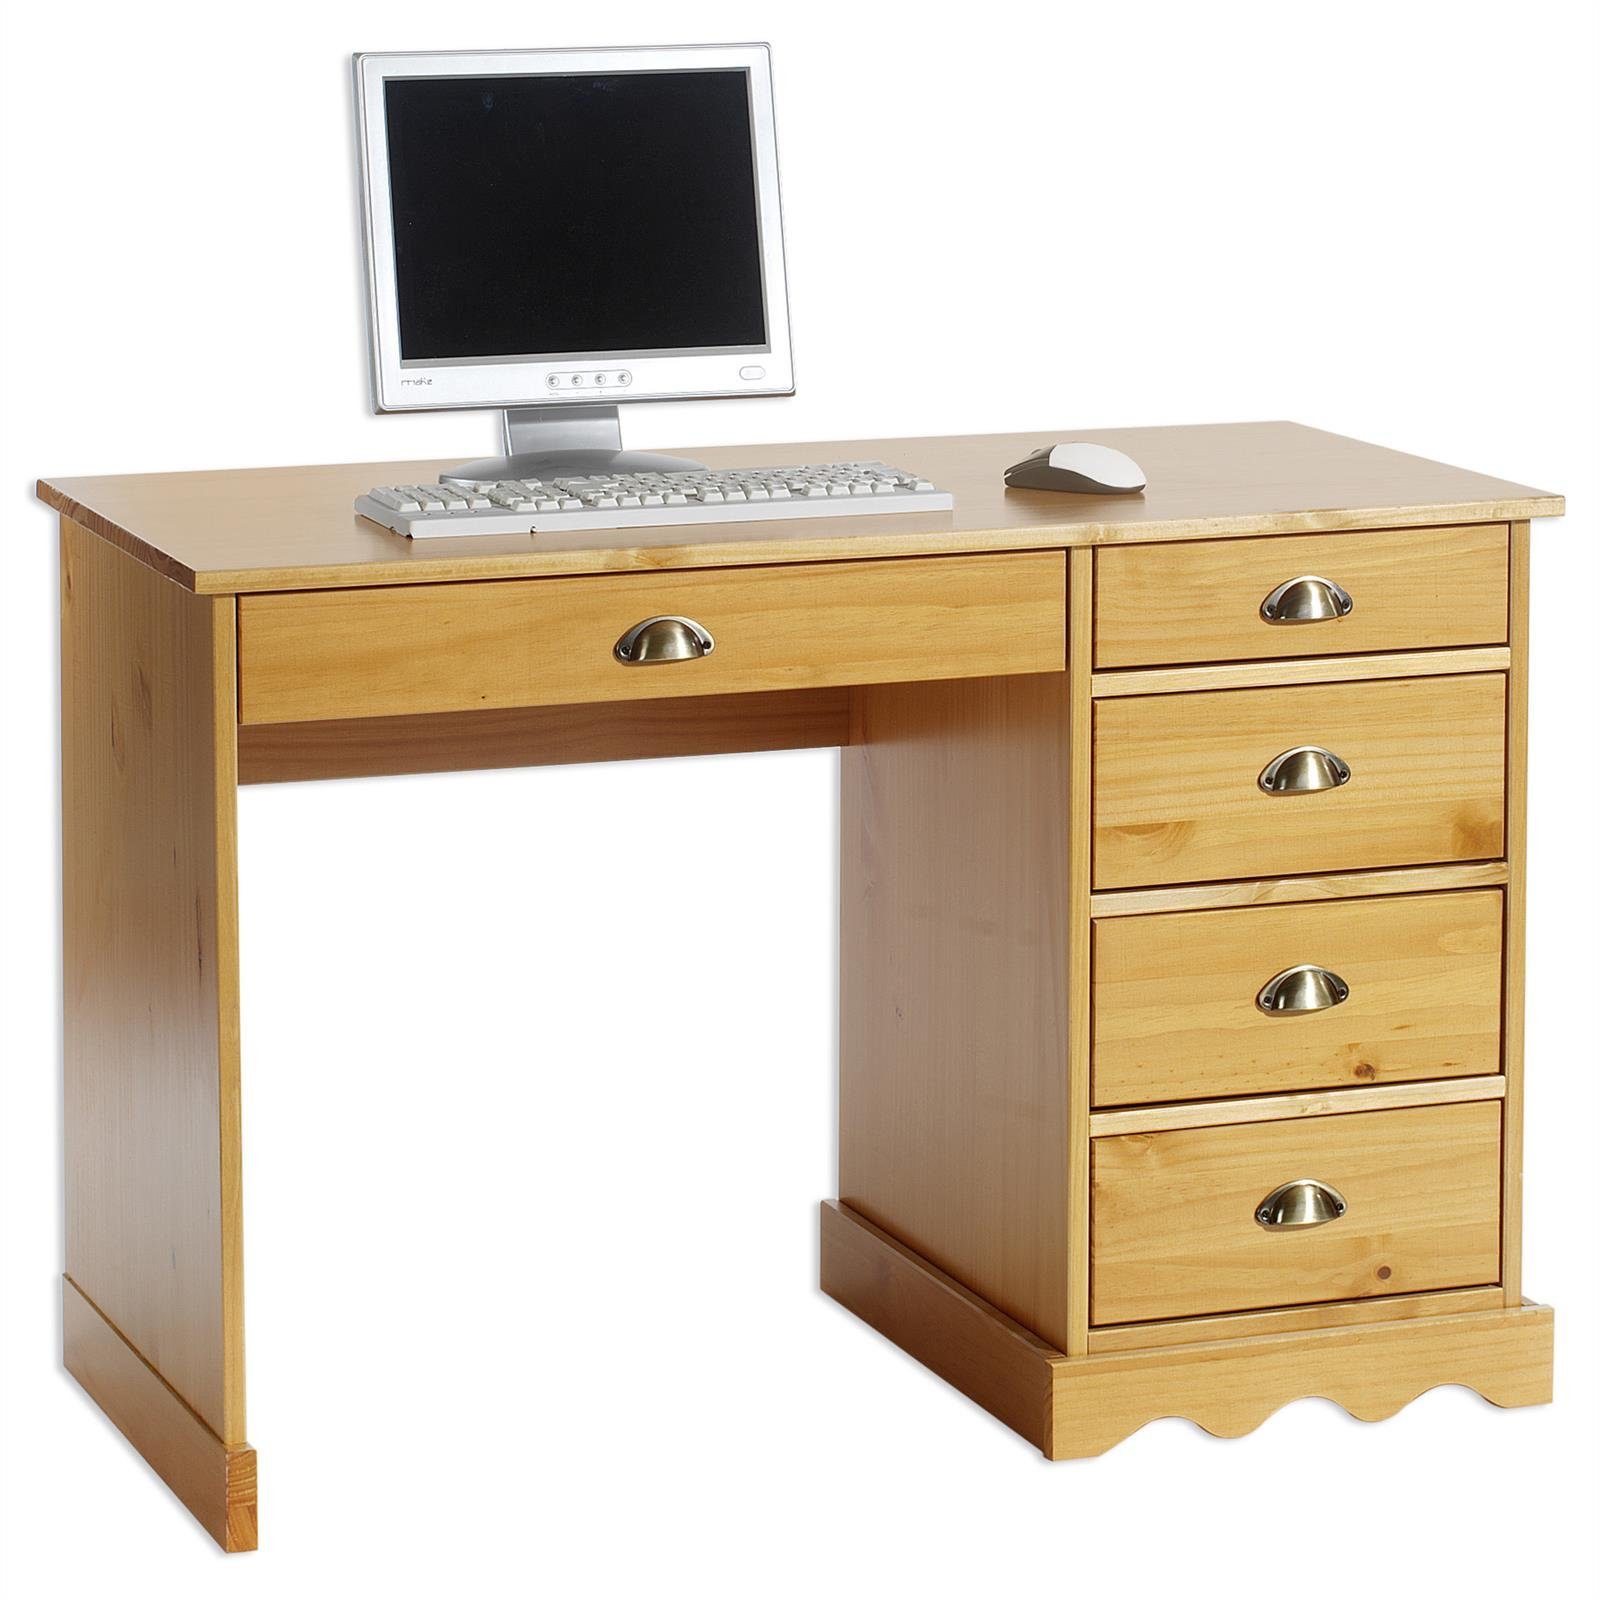 IDIMEX Bürotisch Kiefer honigfarben Schreibtisch in COLETTE, massiv Schreibtisch Landhausstil